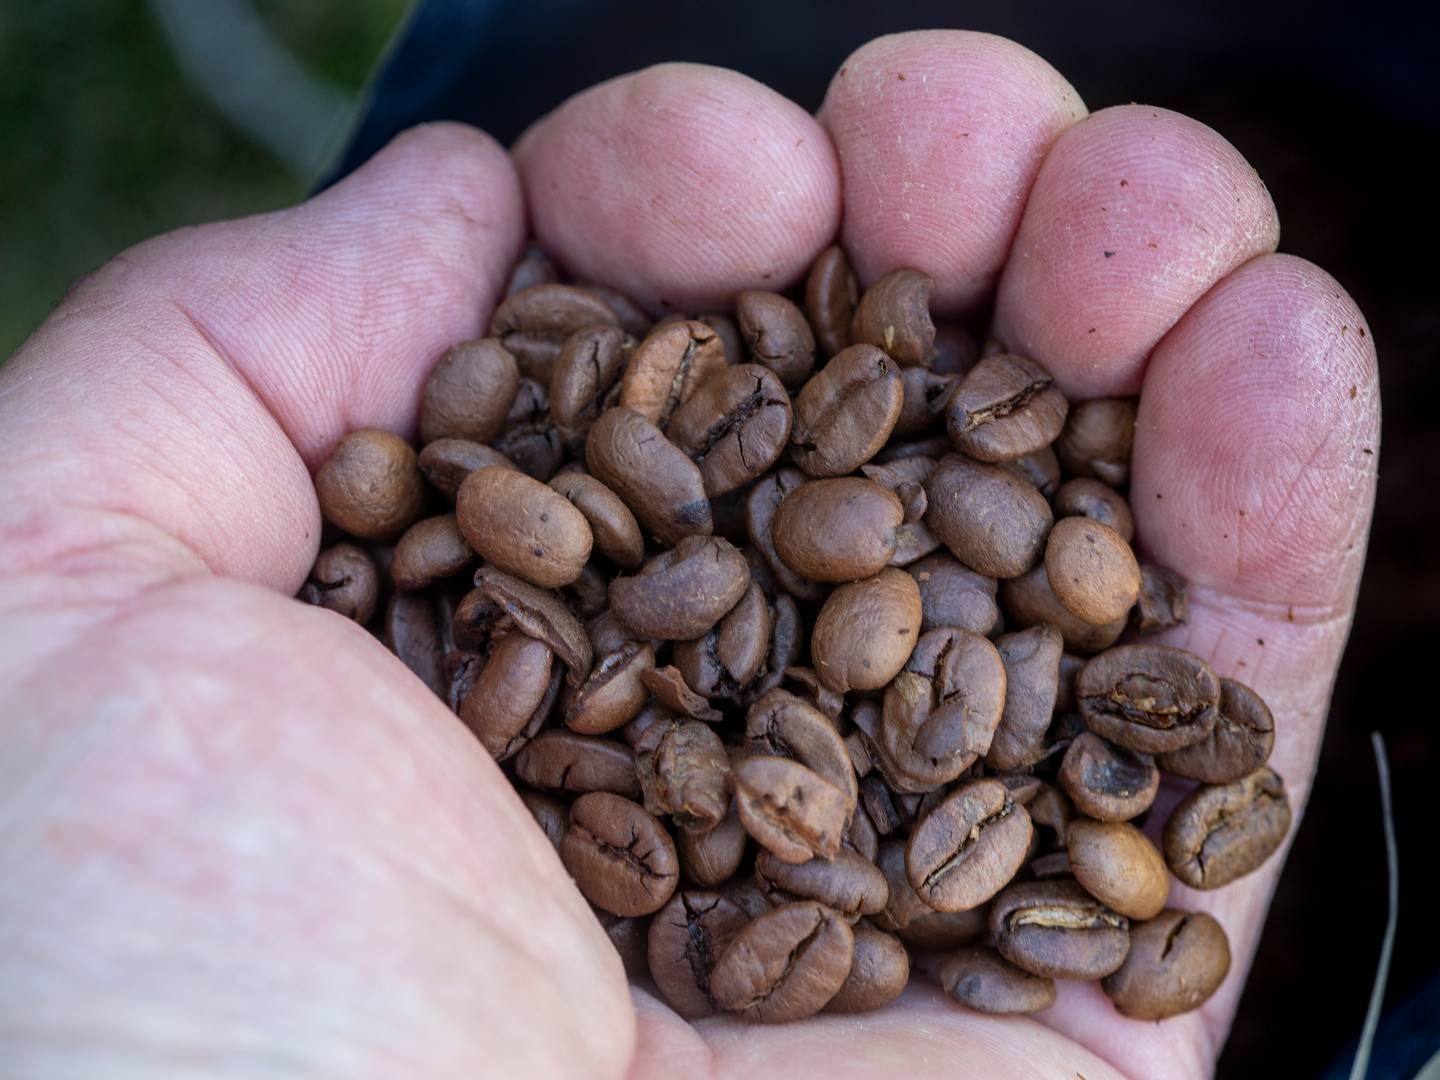 Årets innhøsting av kaffebønner i Vietnam starter først i oktober, men avlingene blir trolig 15–20 prosent mindre enn normalt, opplyser Vietnams kaffe- og kakaoforening. | Foto: Terje Pedersen, NTB Scanpix